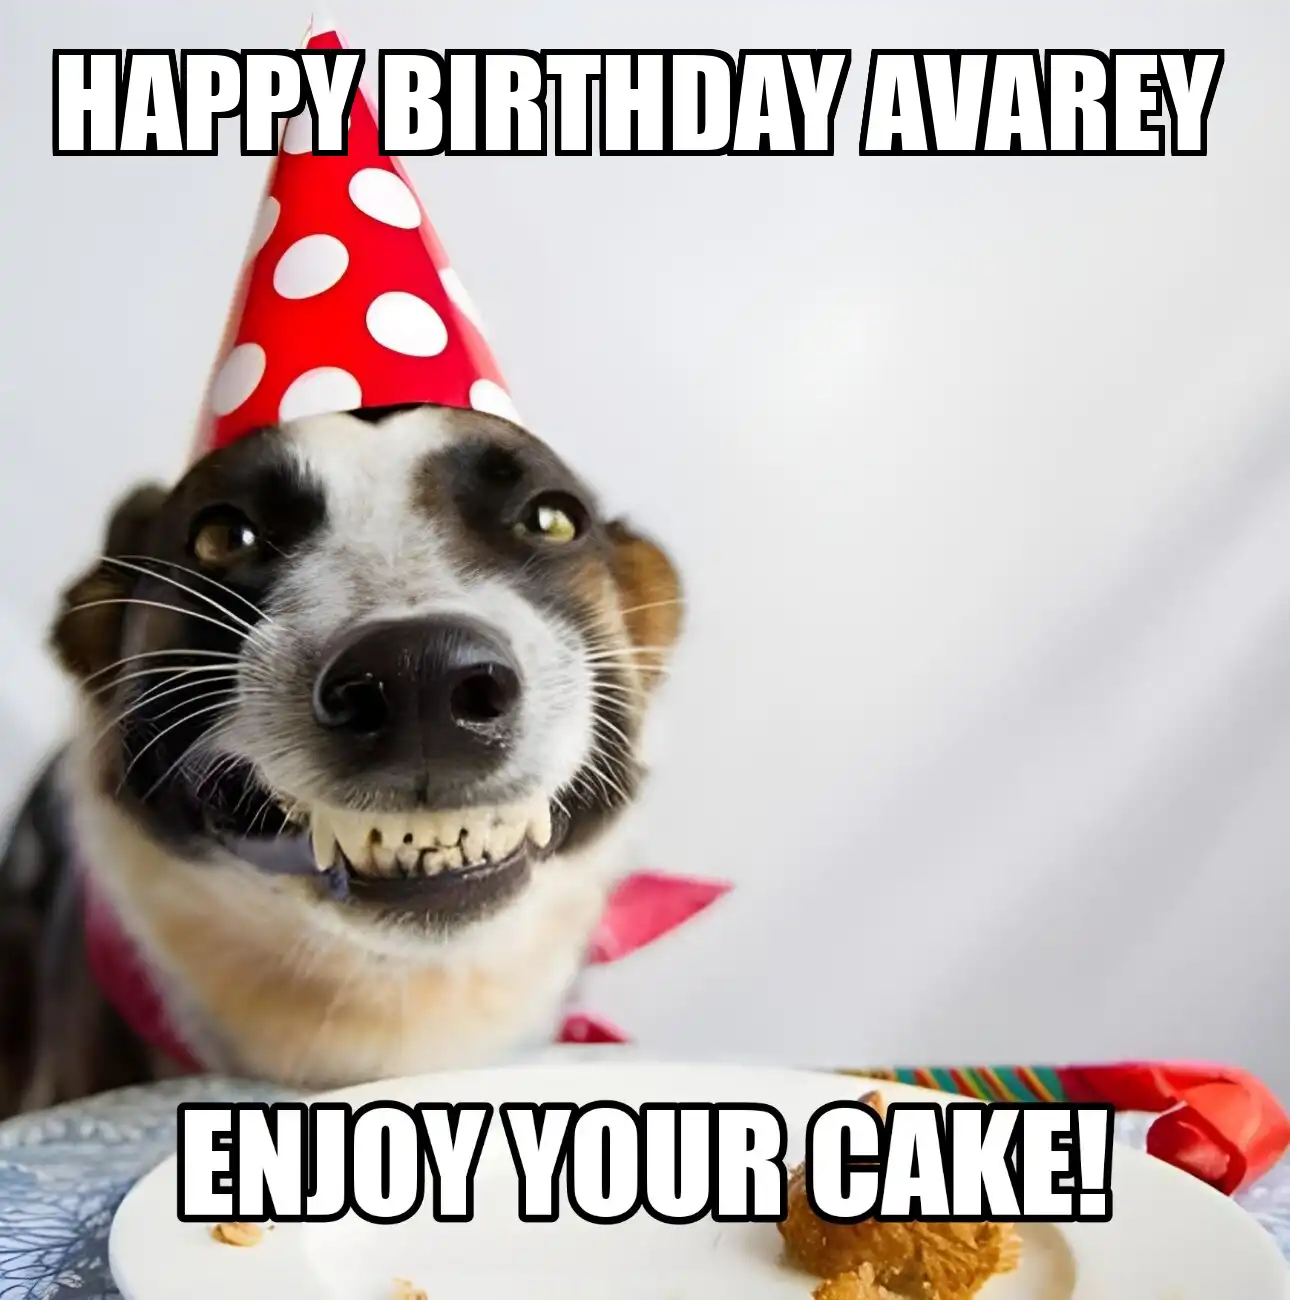 Happy Birthday Avarey Enjoy Your Cake Dog Meme